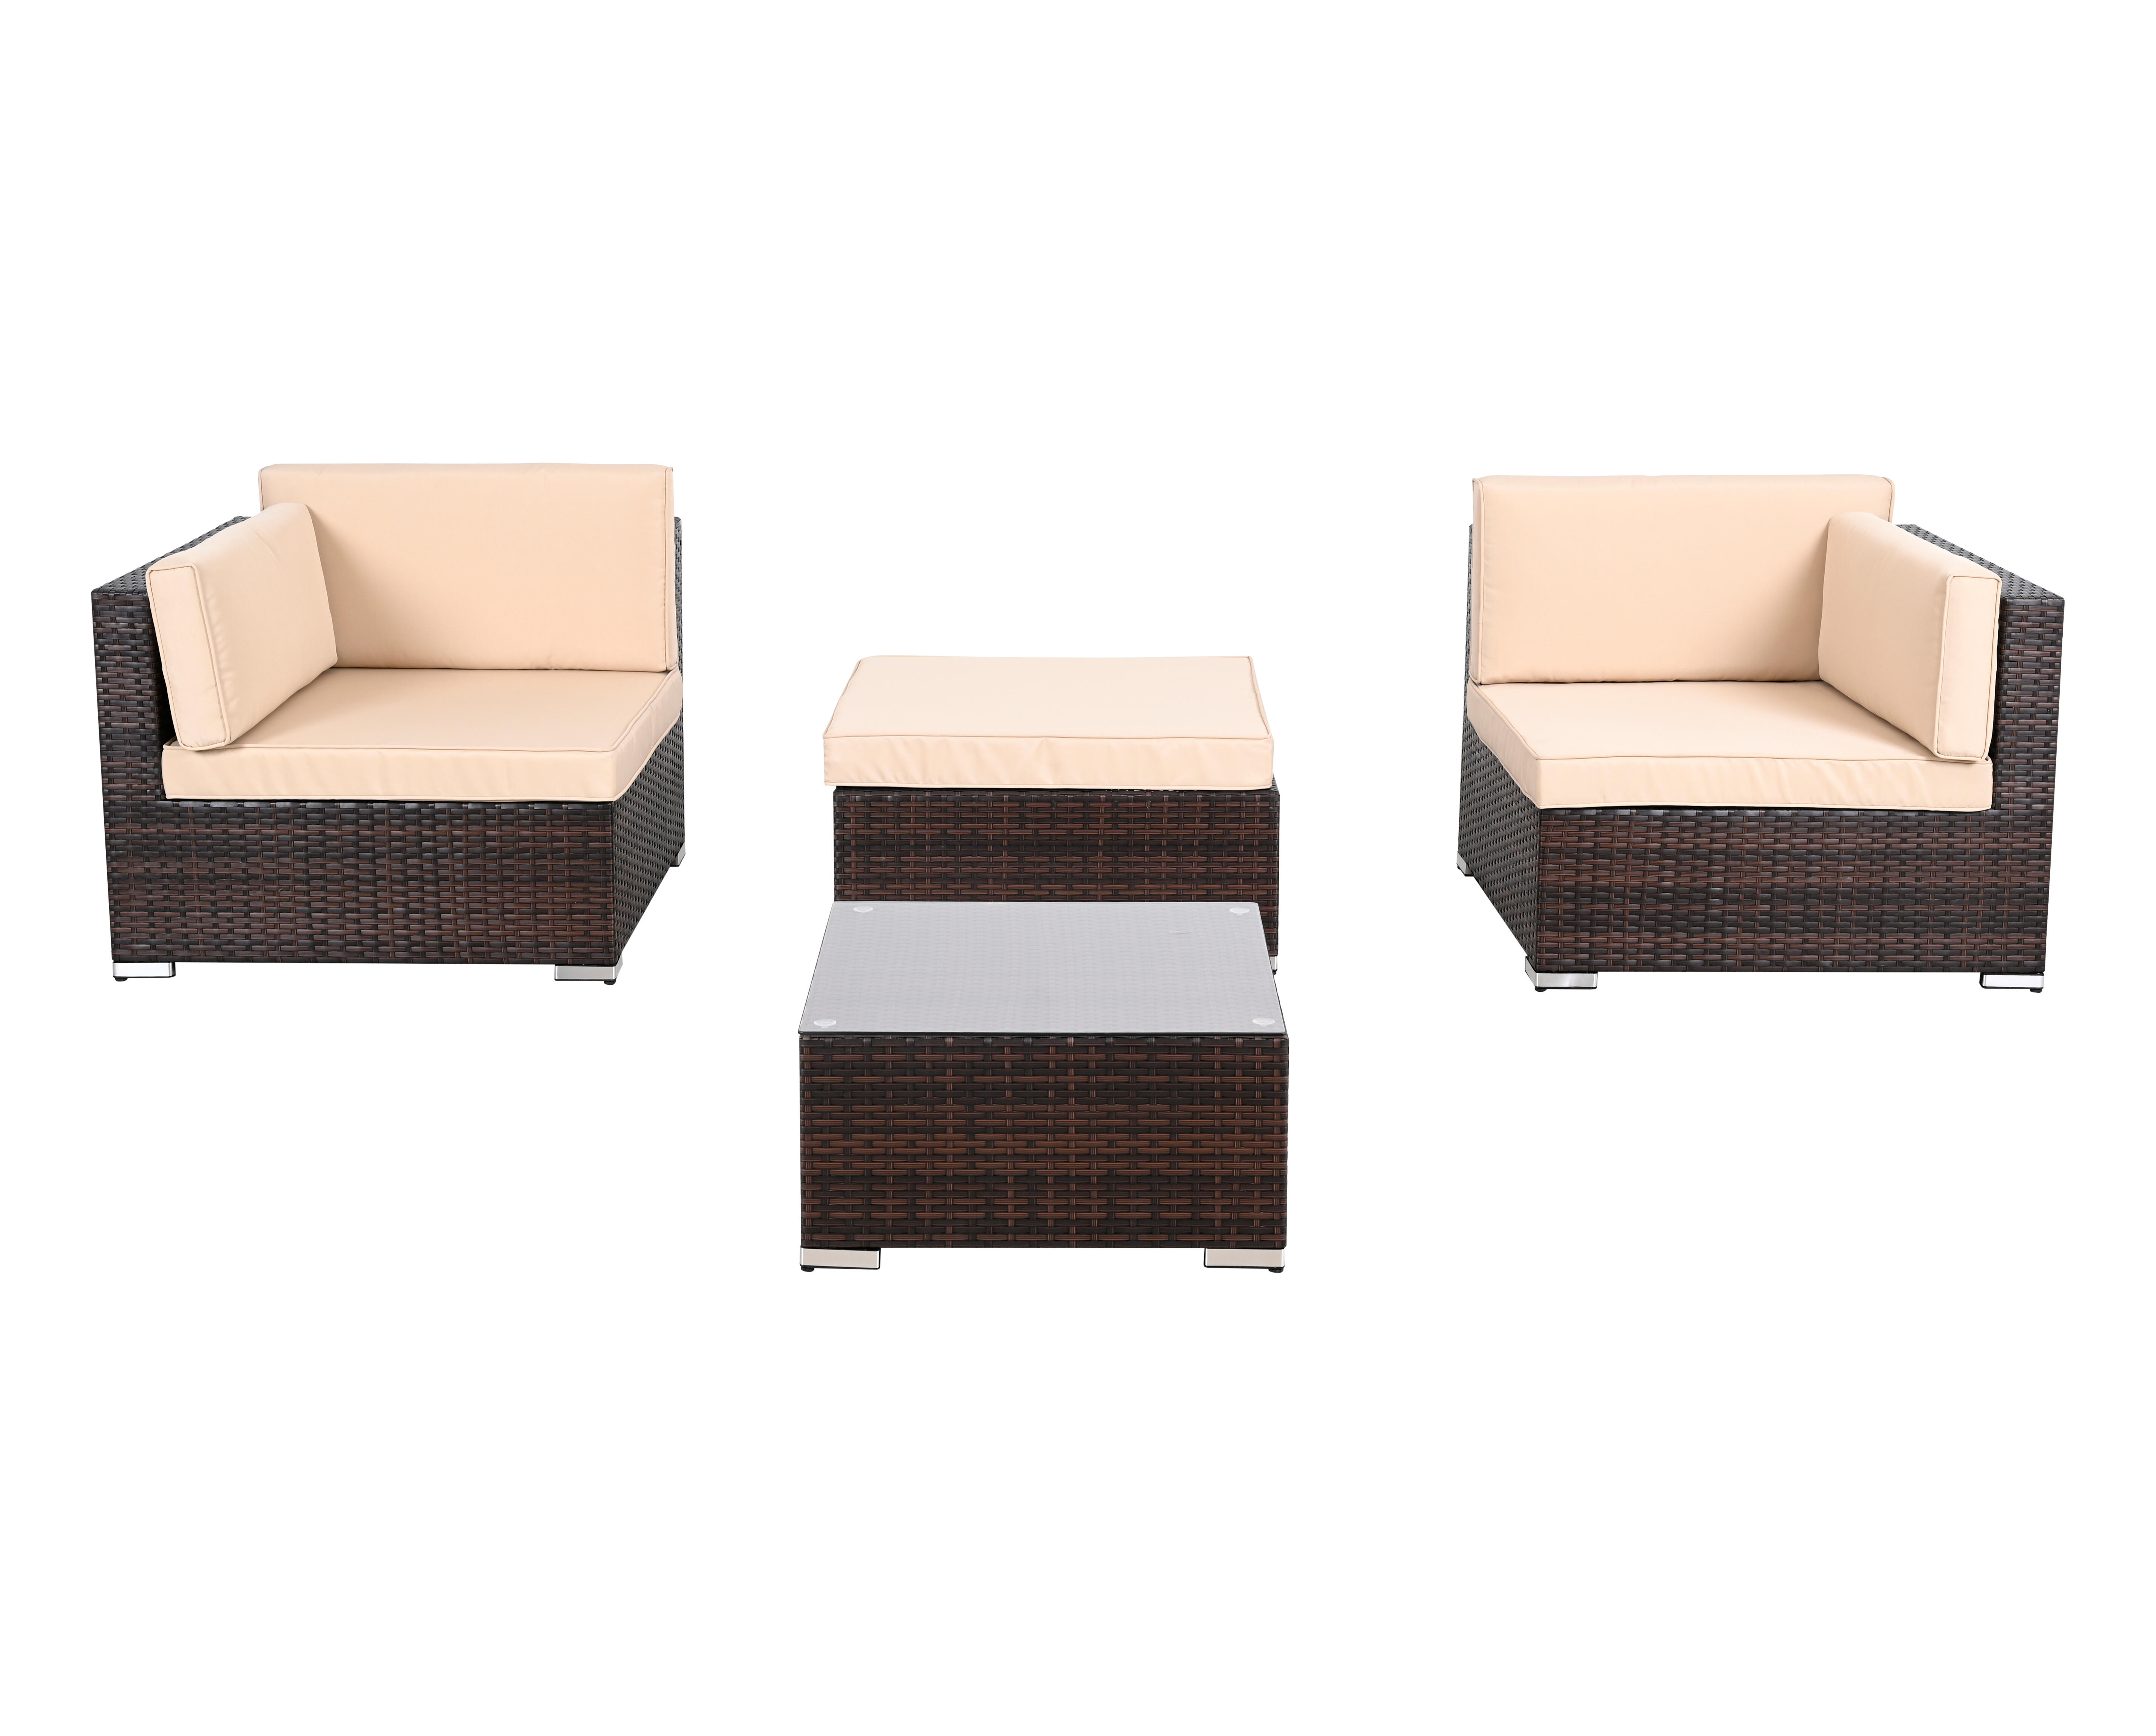 Set de muebles de porche de ratán sintético gales marrón. parte conjunto